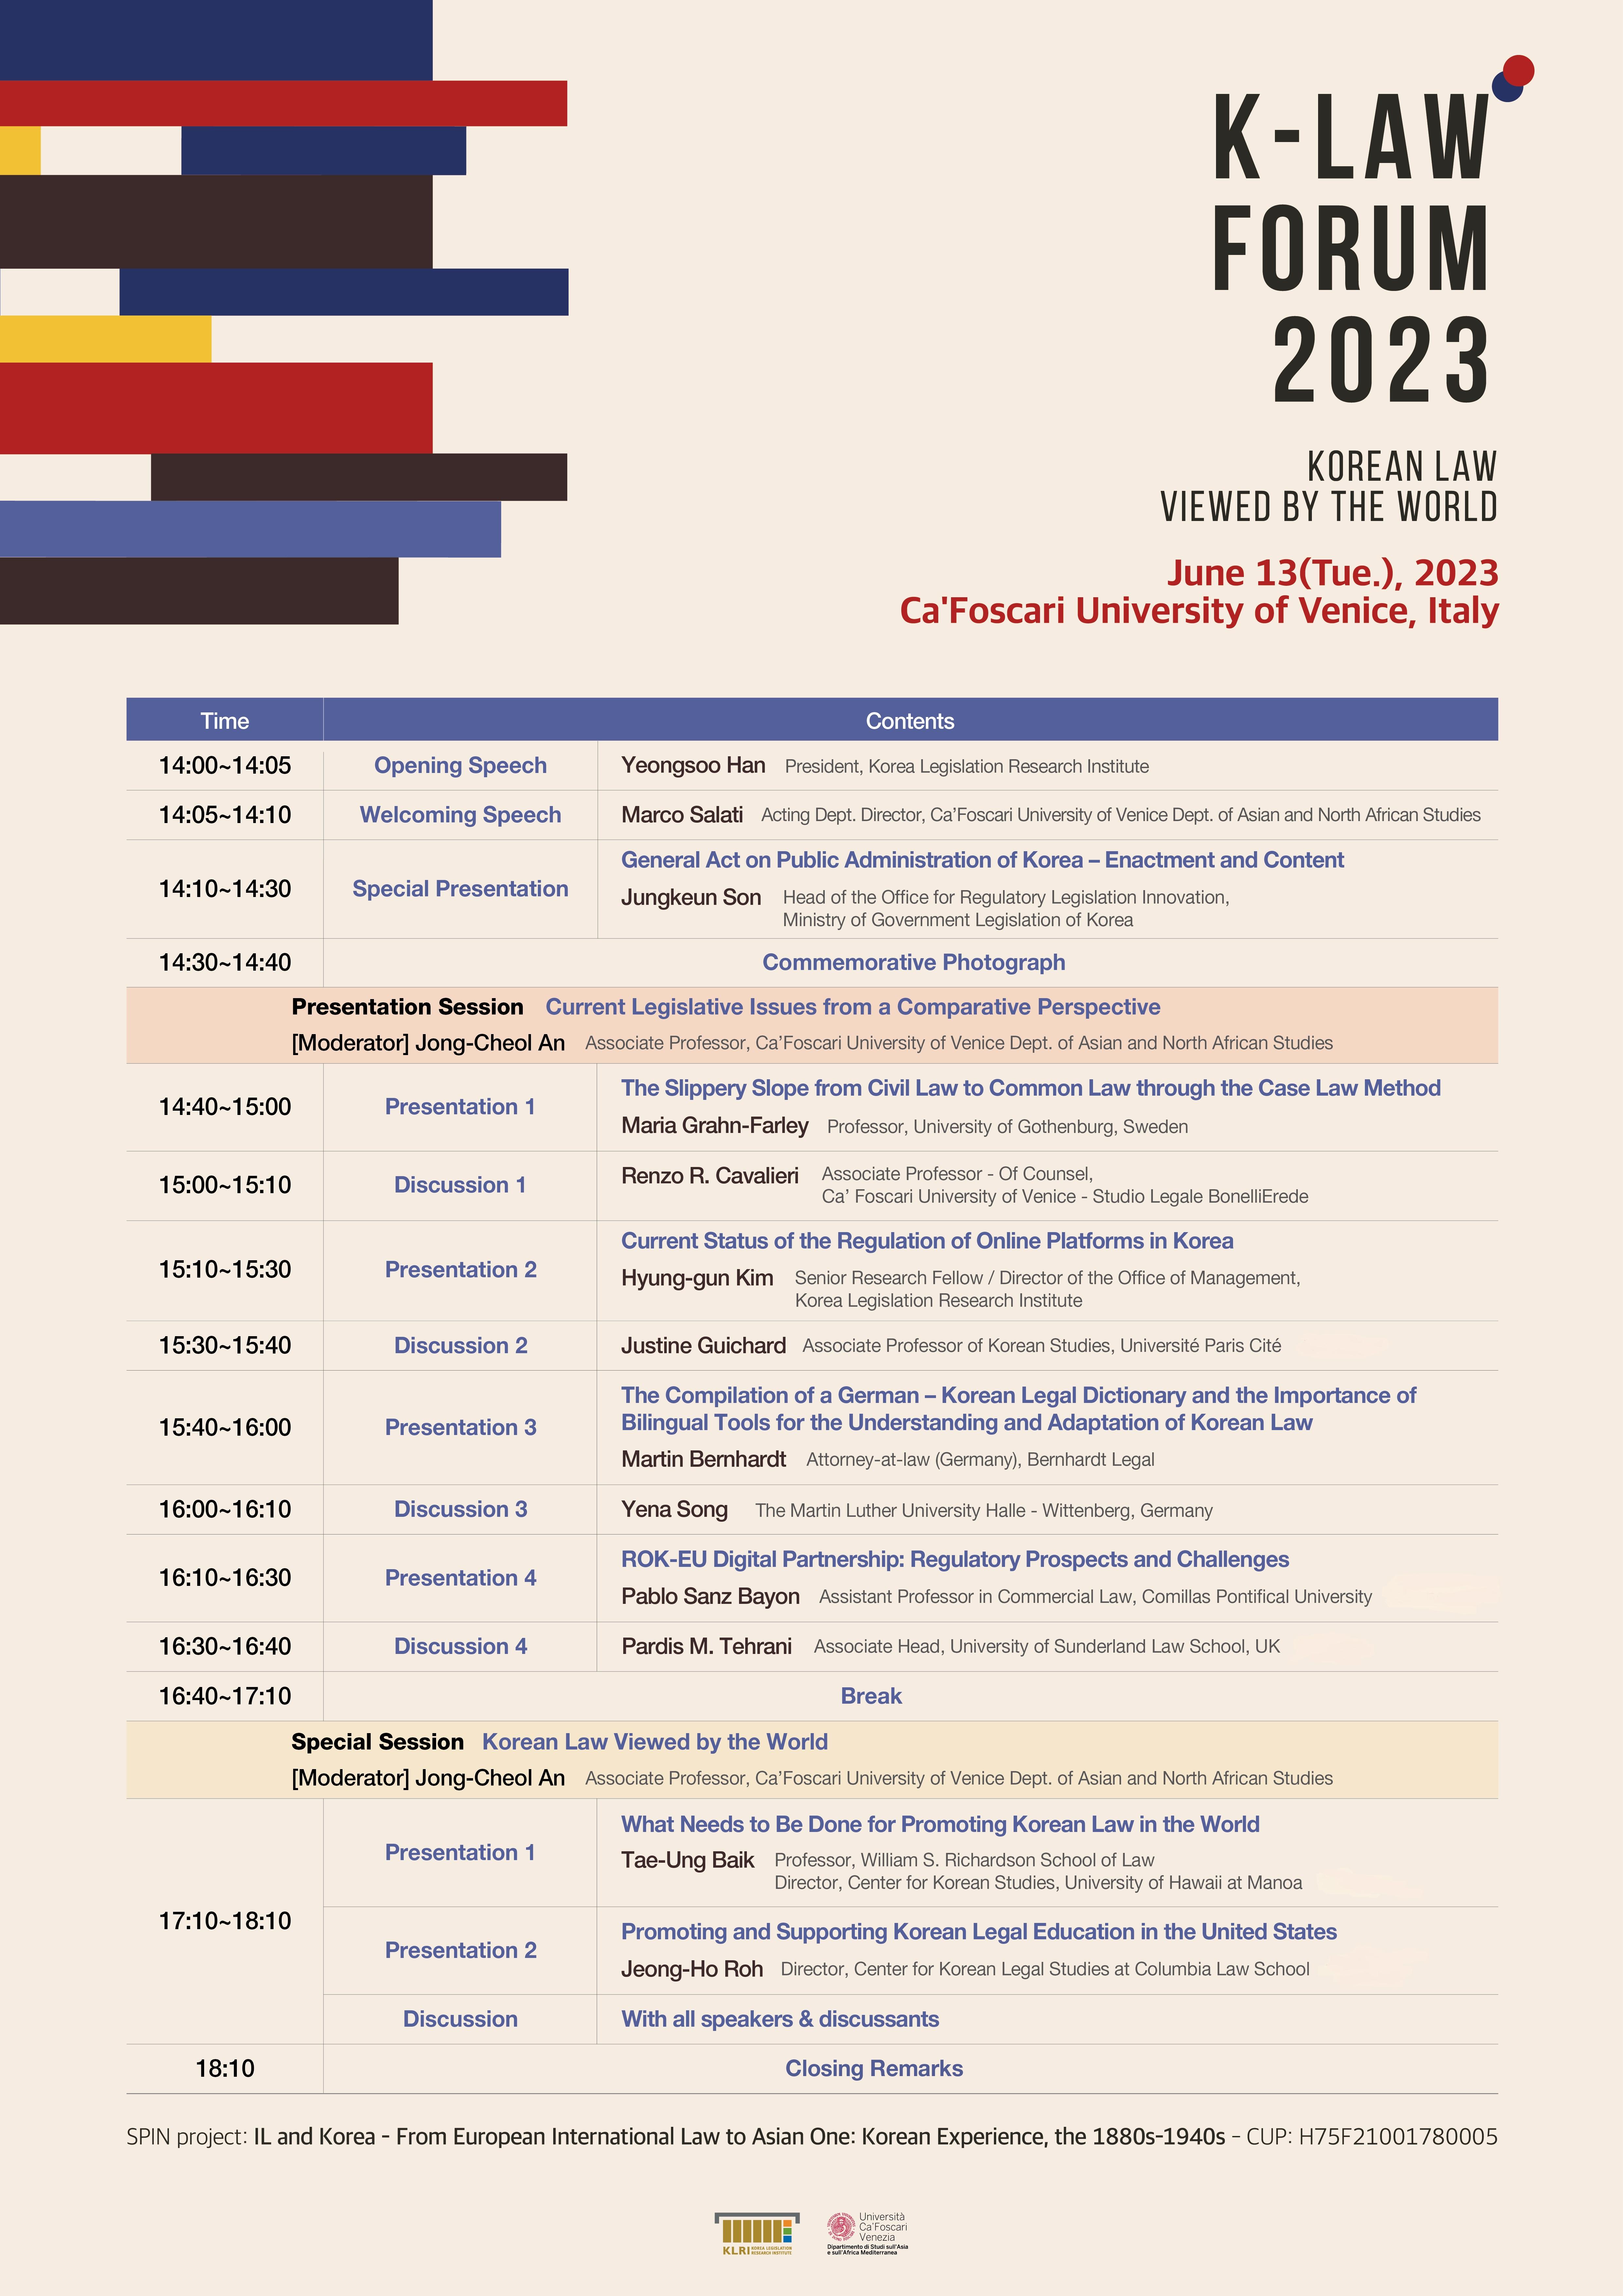 (영문) 2023년 K-Law Forum 일정표 - 자세한 내용은 하단 참조